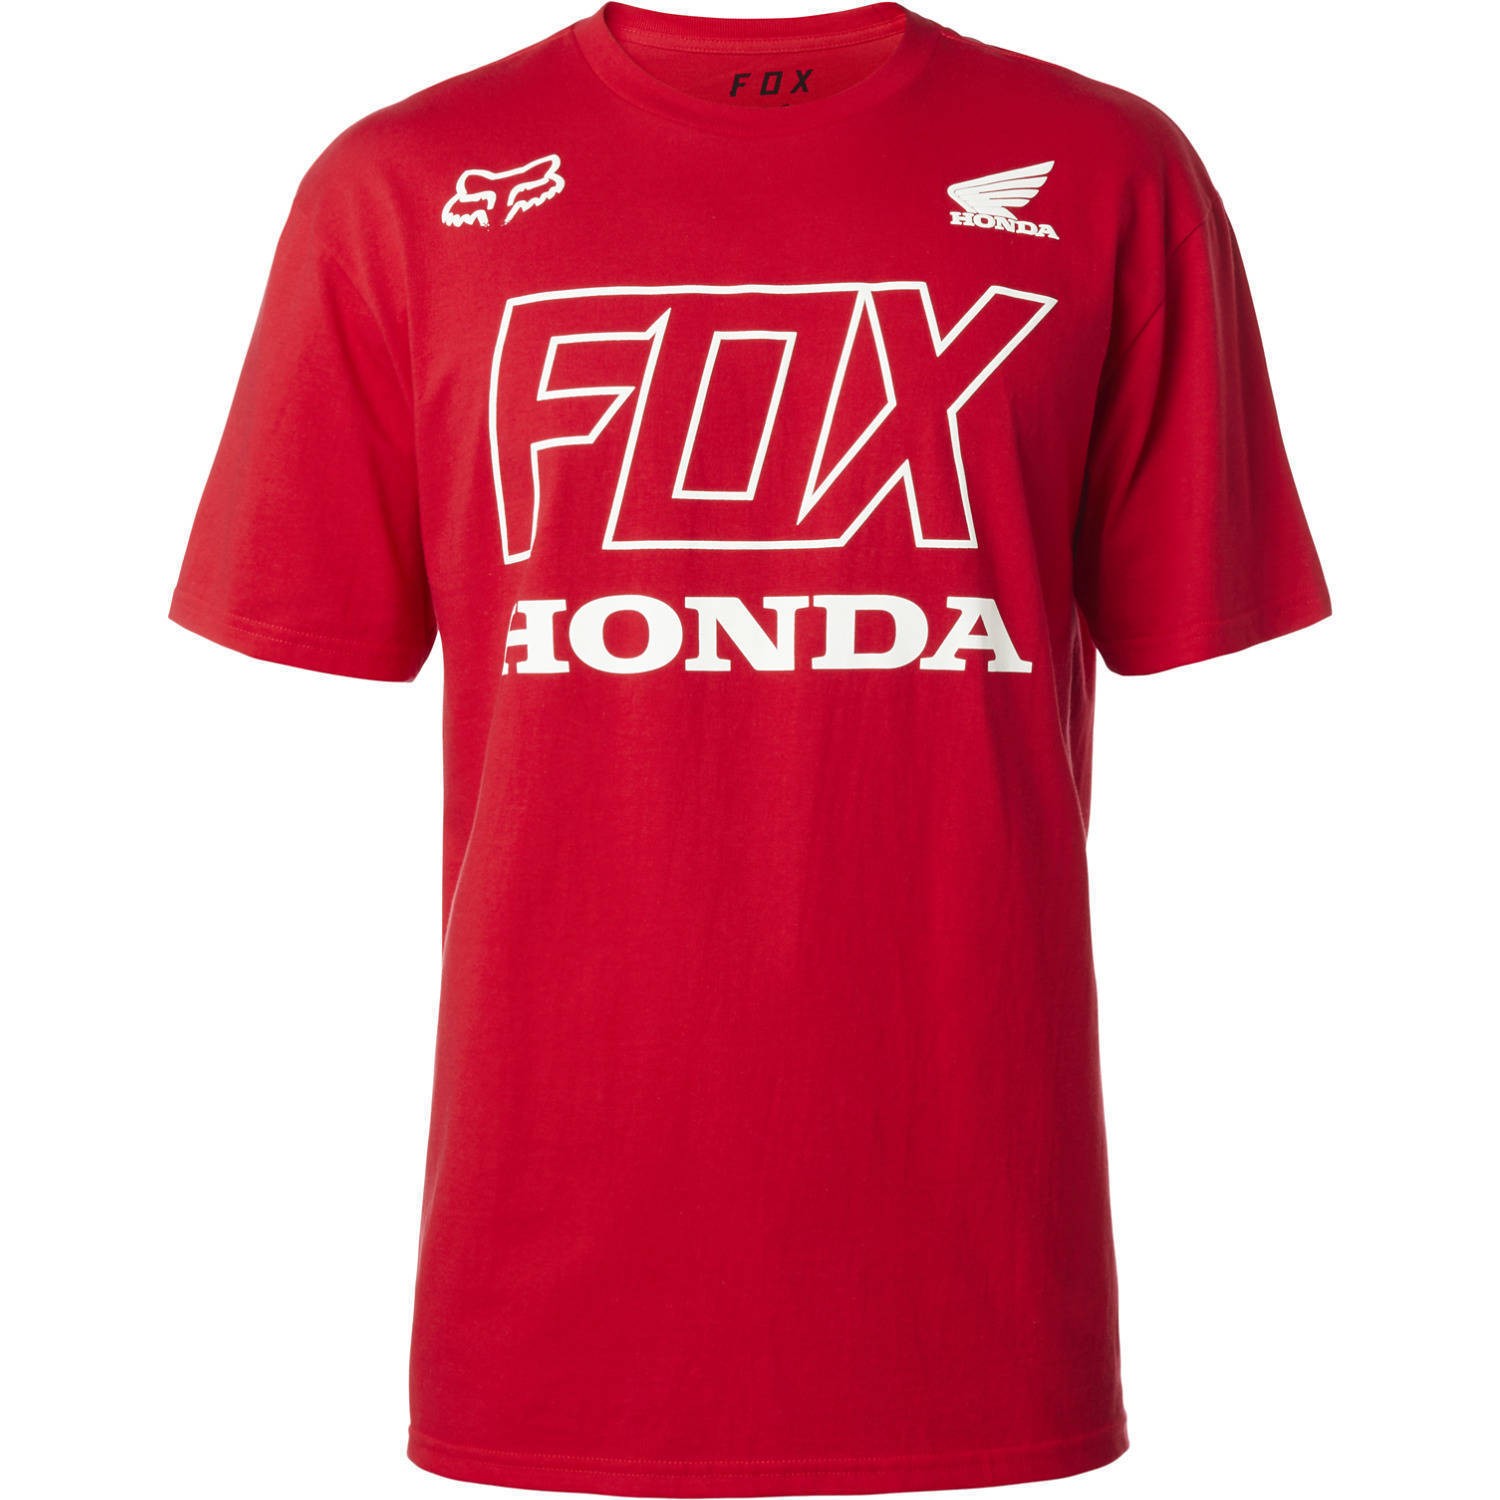 FOX honda t-shirt dark red s